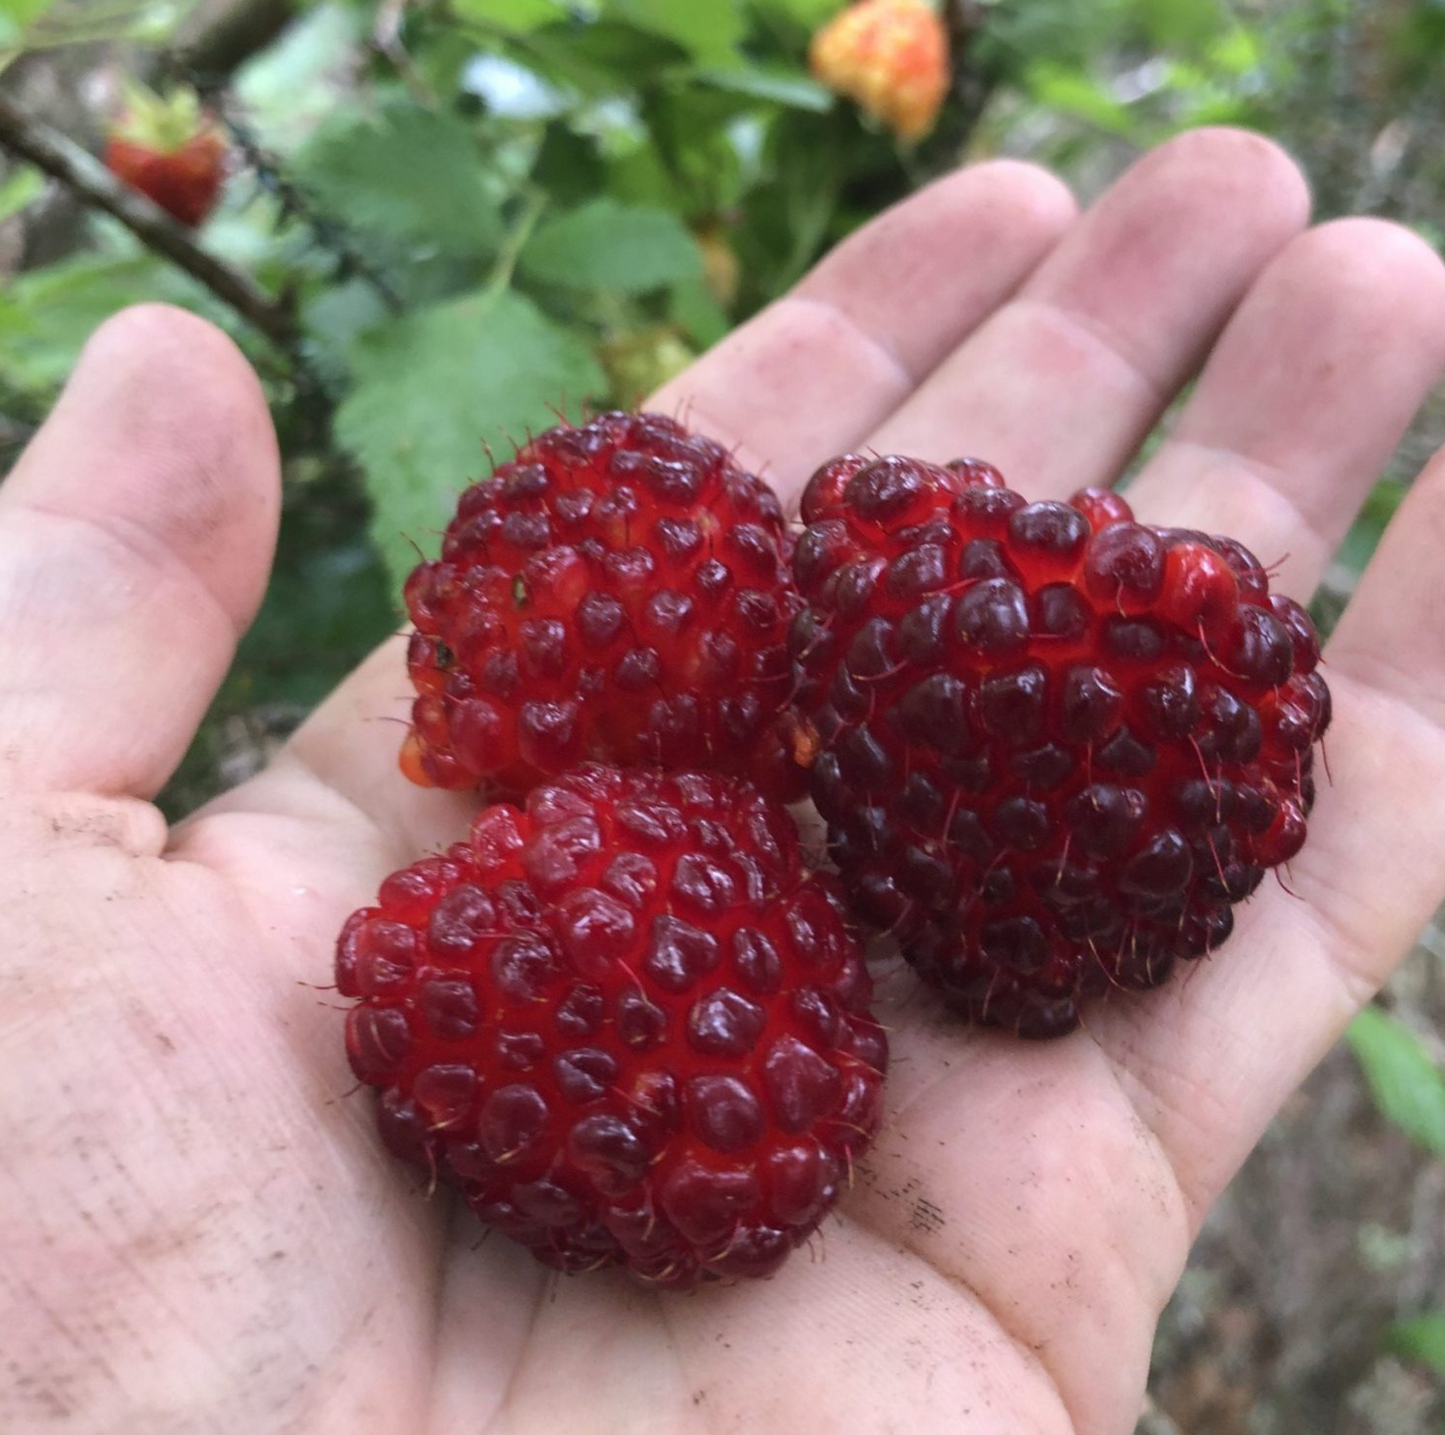 Hawaii Island Seeds: Akala, Hawaiian Blackberry/Raspberry, Red Fruit